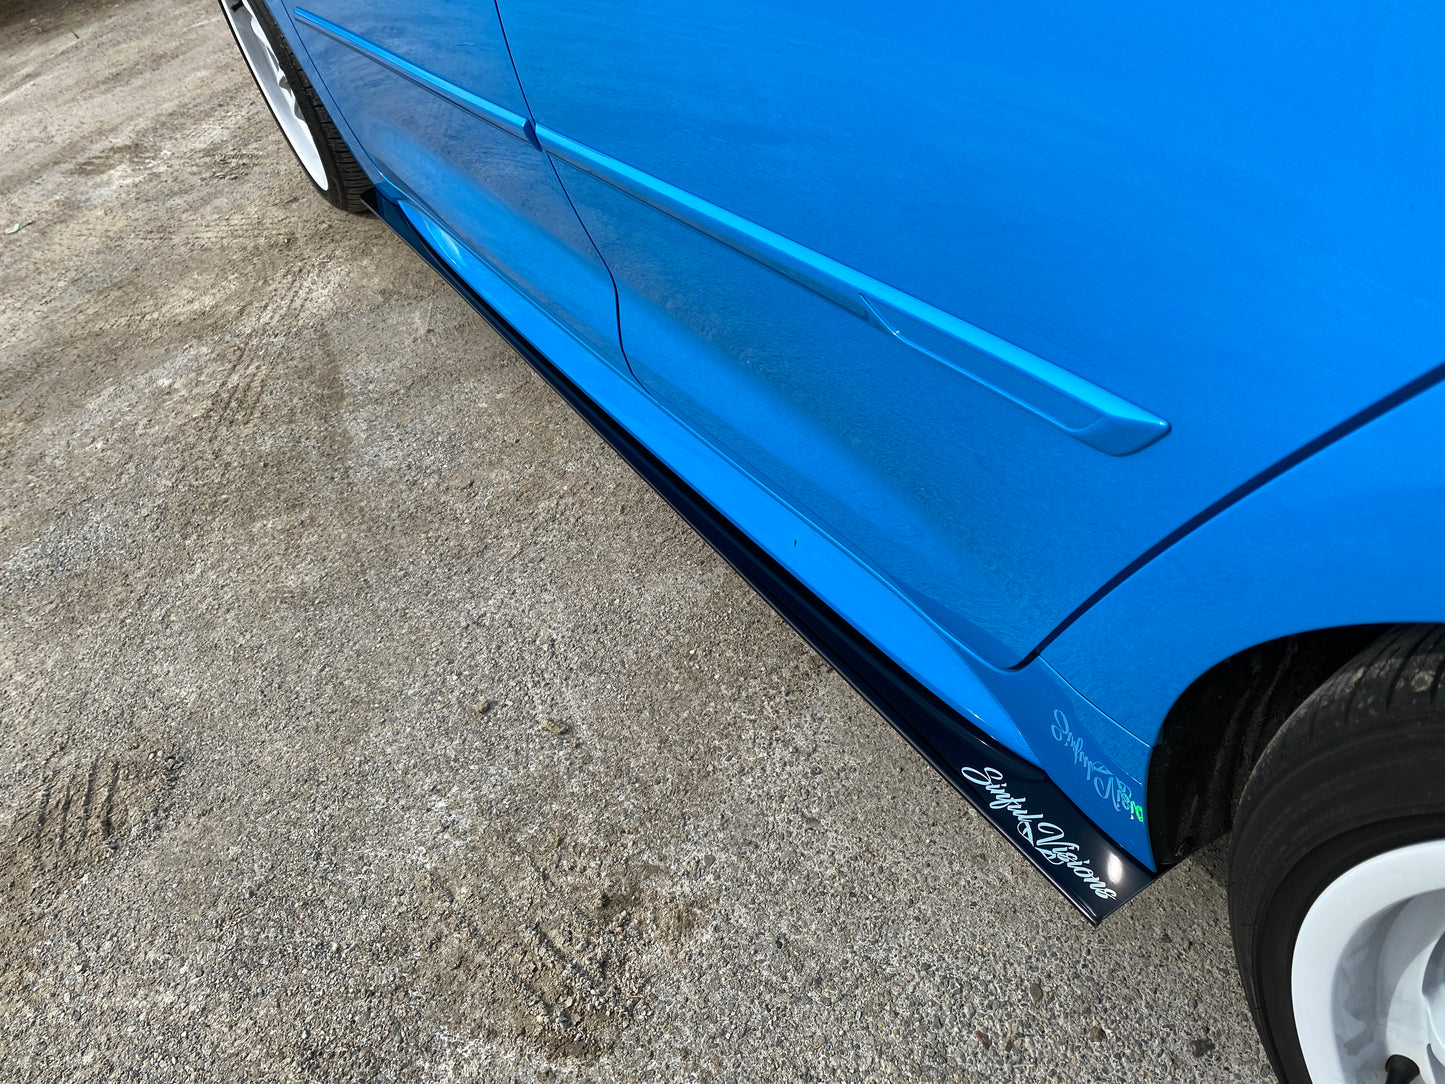 2013 Chrysler 300s Side Splitters